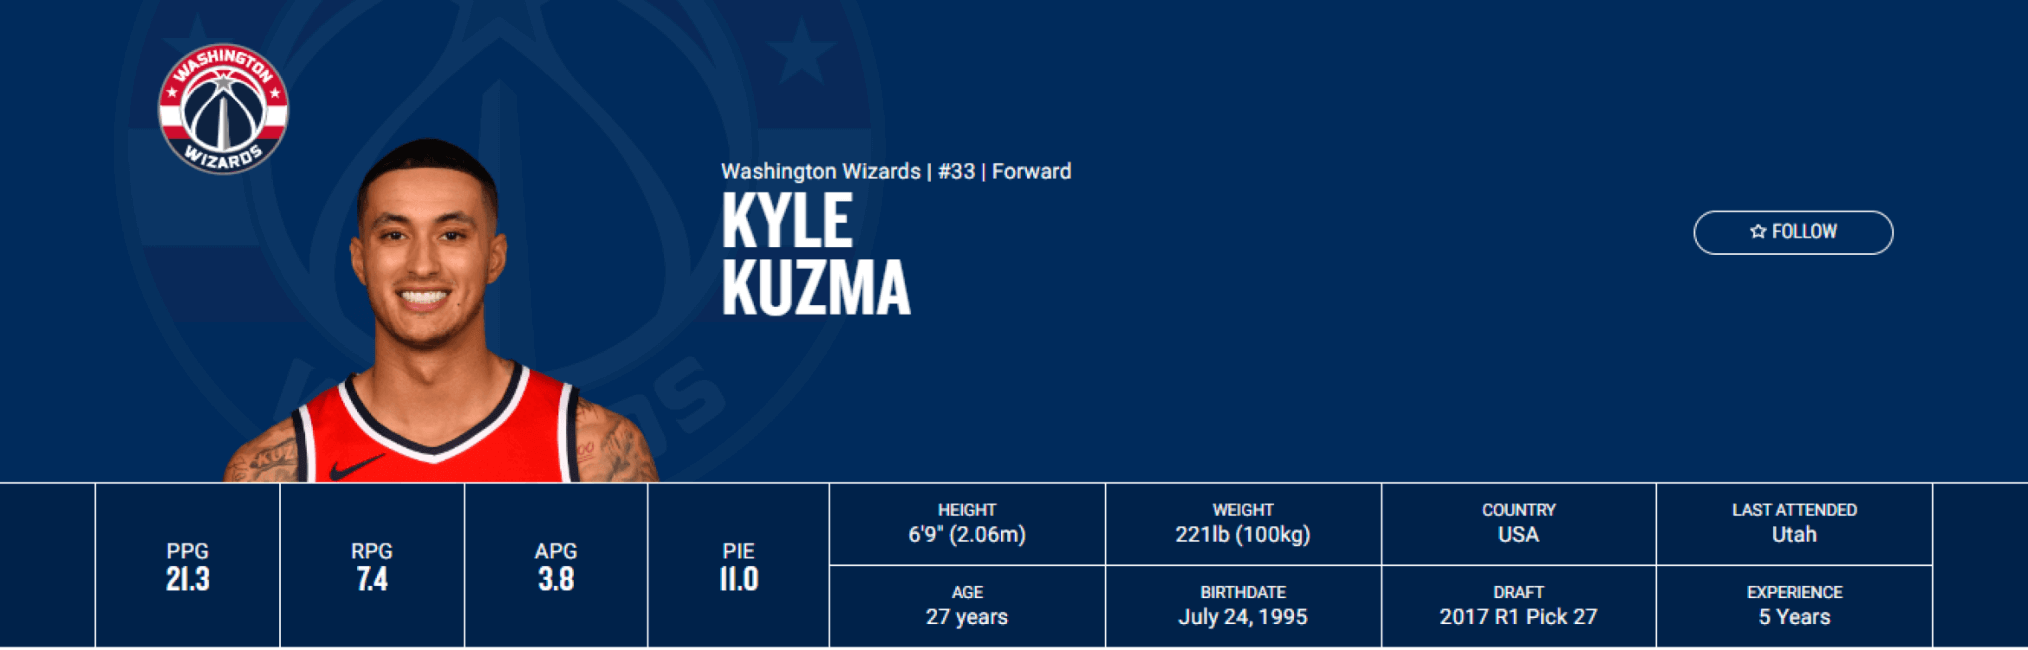 Kyle Kuzma está, por ahora, en la que es la temporada de su carrera. / Fuente: NBA.com